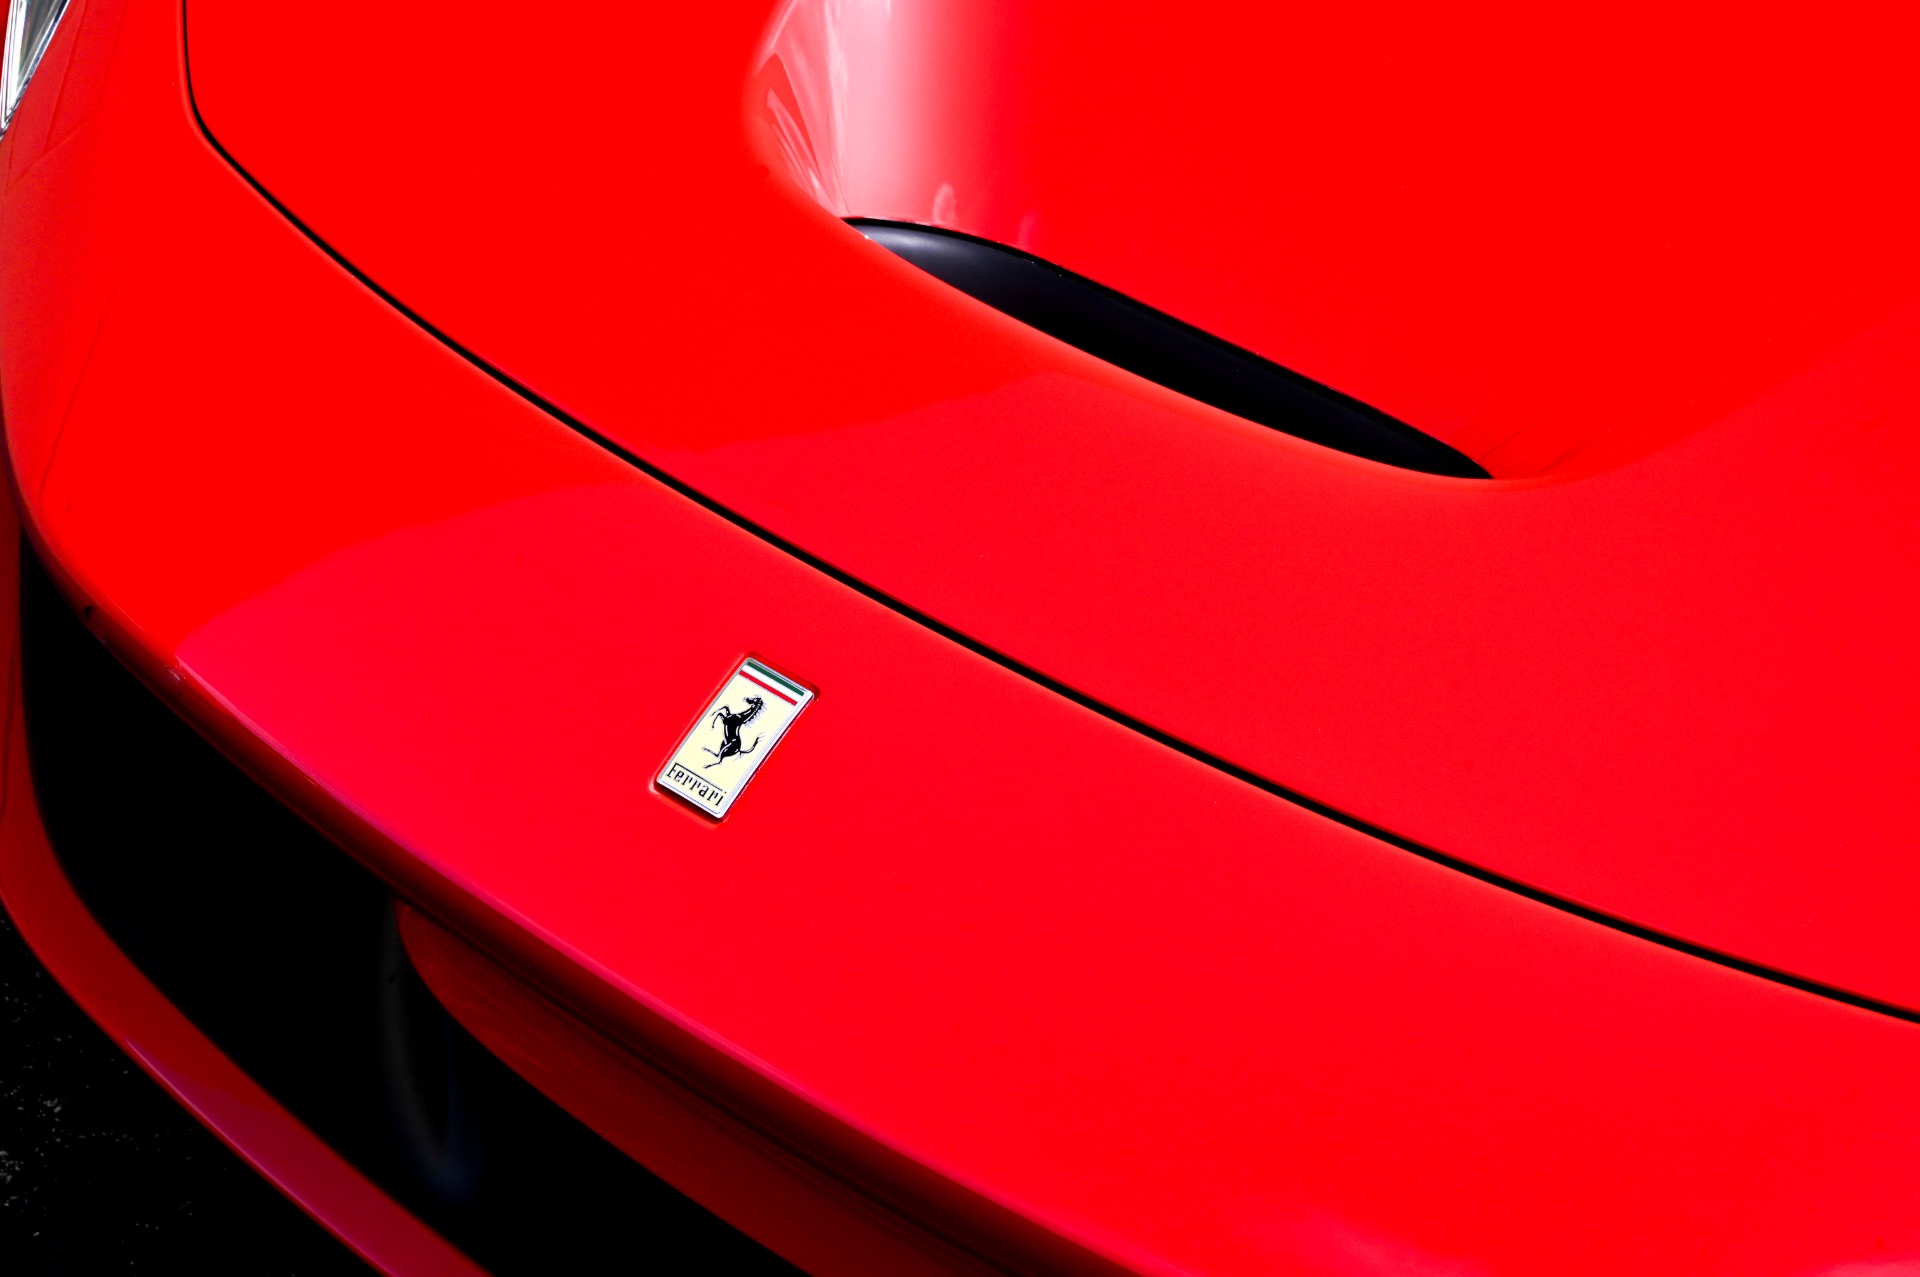 Used 2022 Ferrari F8 Tributo For Sale ($365,000) | iLusso Palm Beach ...